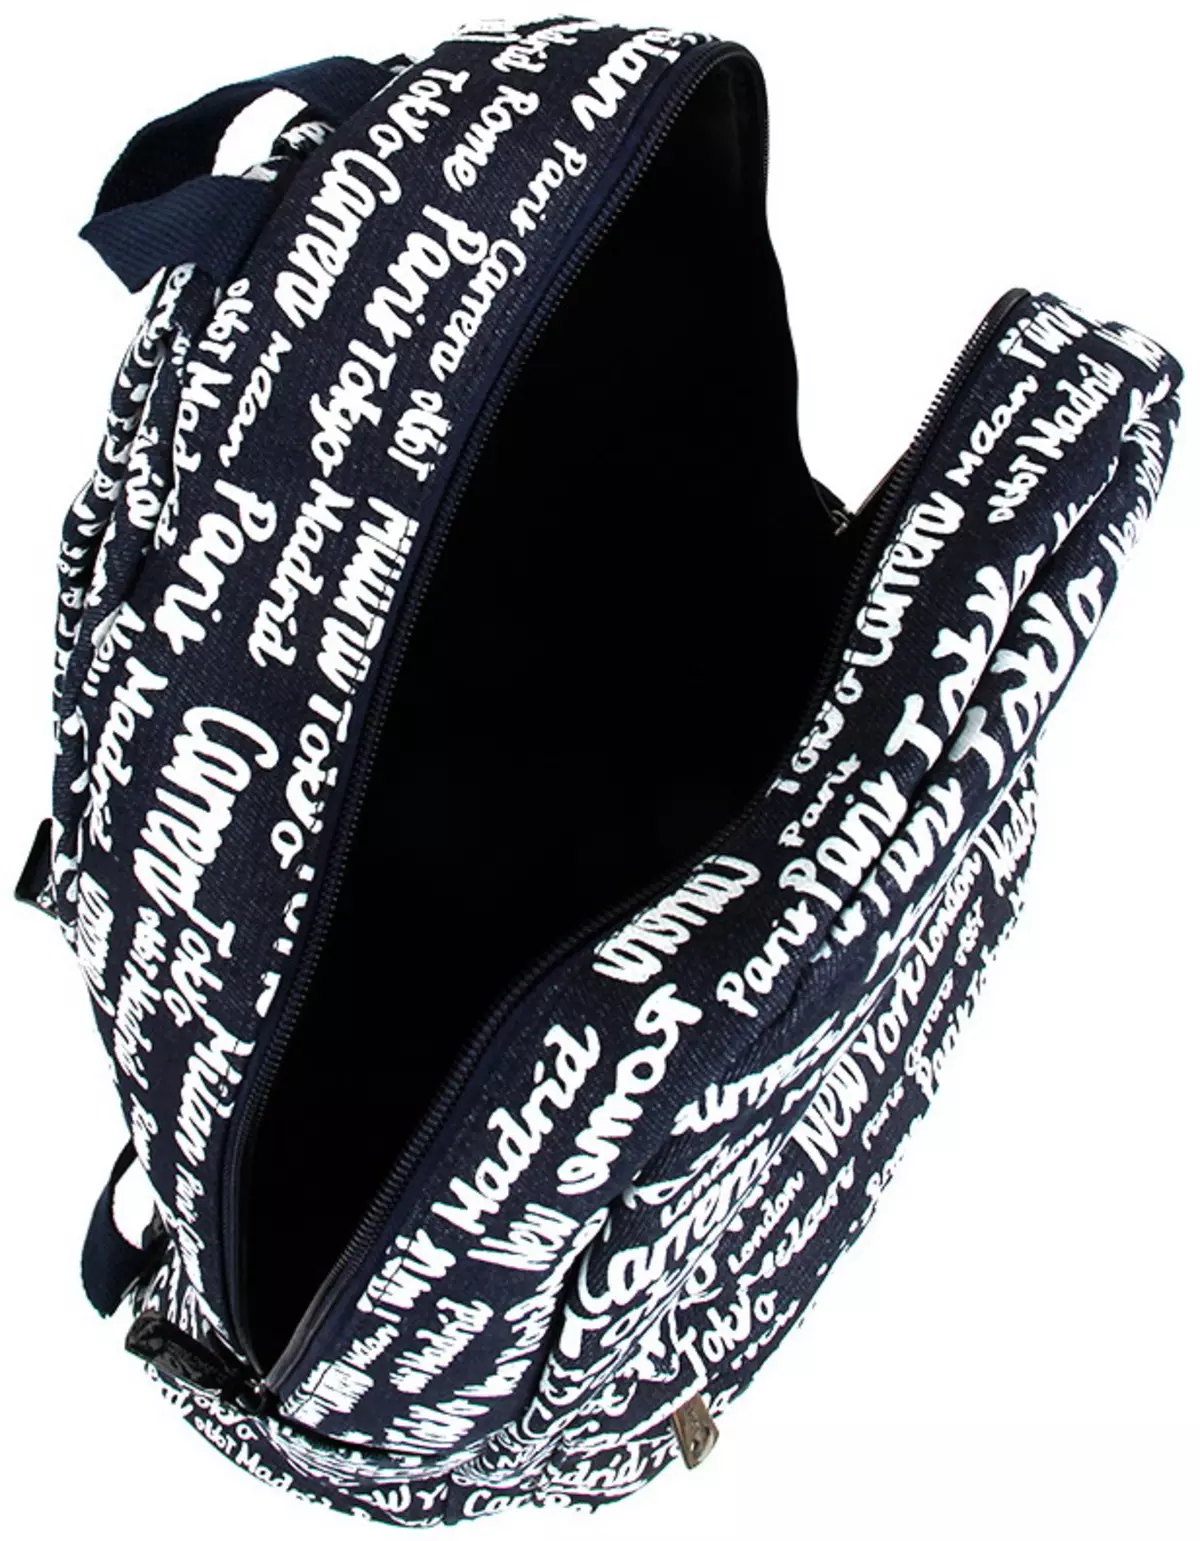 Рюкзаки Kari: огляд жіночих моделей, шкільні рюкзаки для дівчаток і хлопчиків, білі і чорні рюкзаки інших брендів, представлених в магазині 15431_26